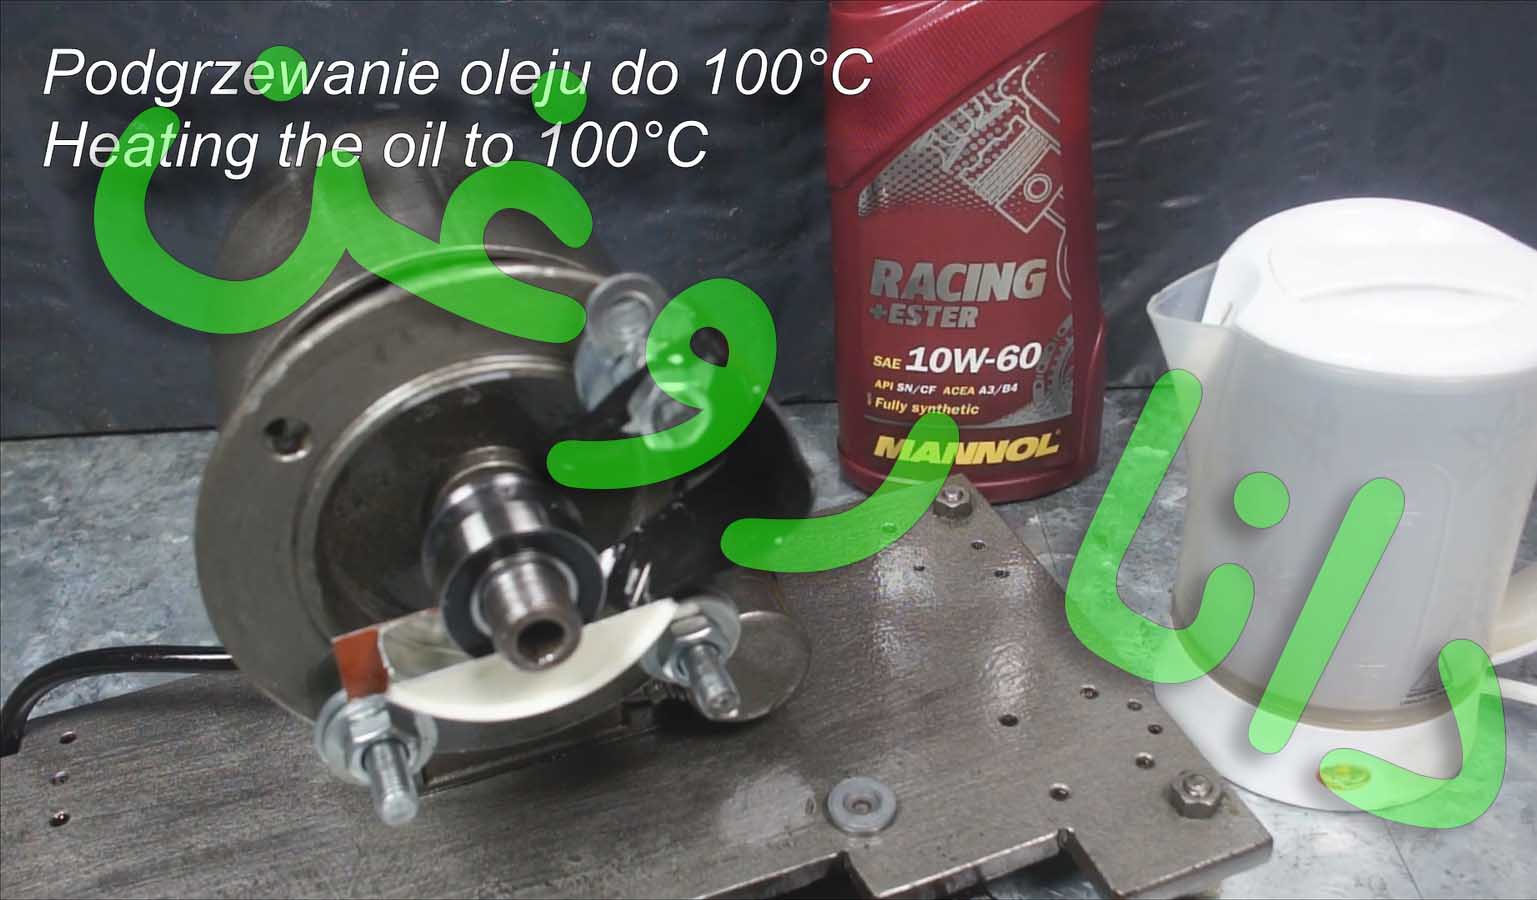 تست سایش روغن ریسینگ 10 60 مانول المان در حرارت 100 درجه سانتیگراد به مدت 2 دقیقه - دانا یدک